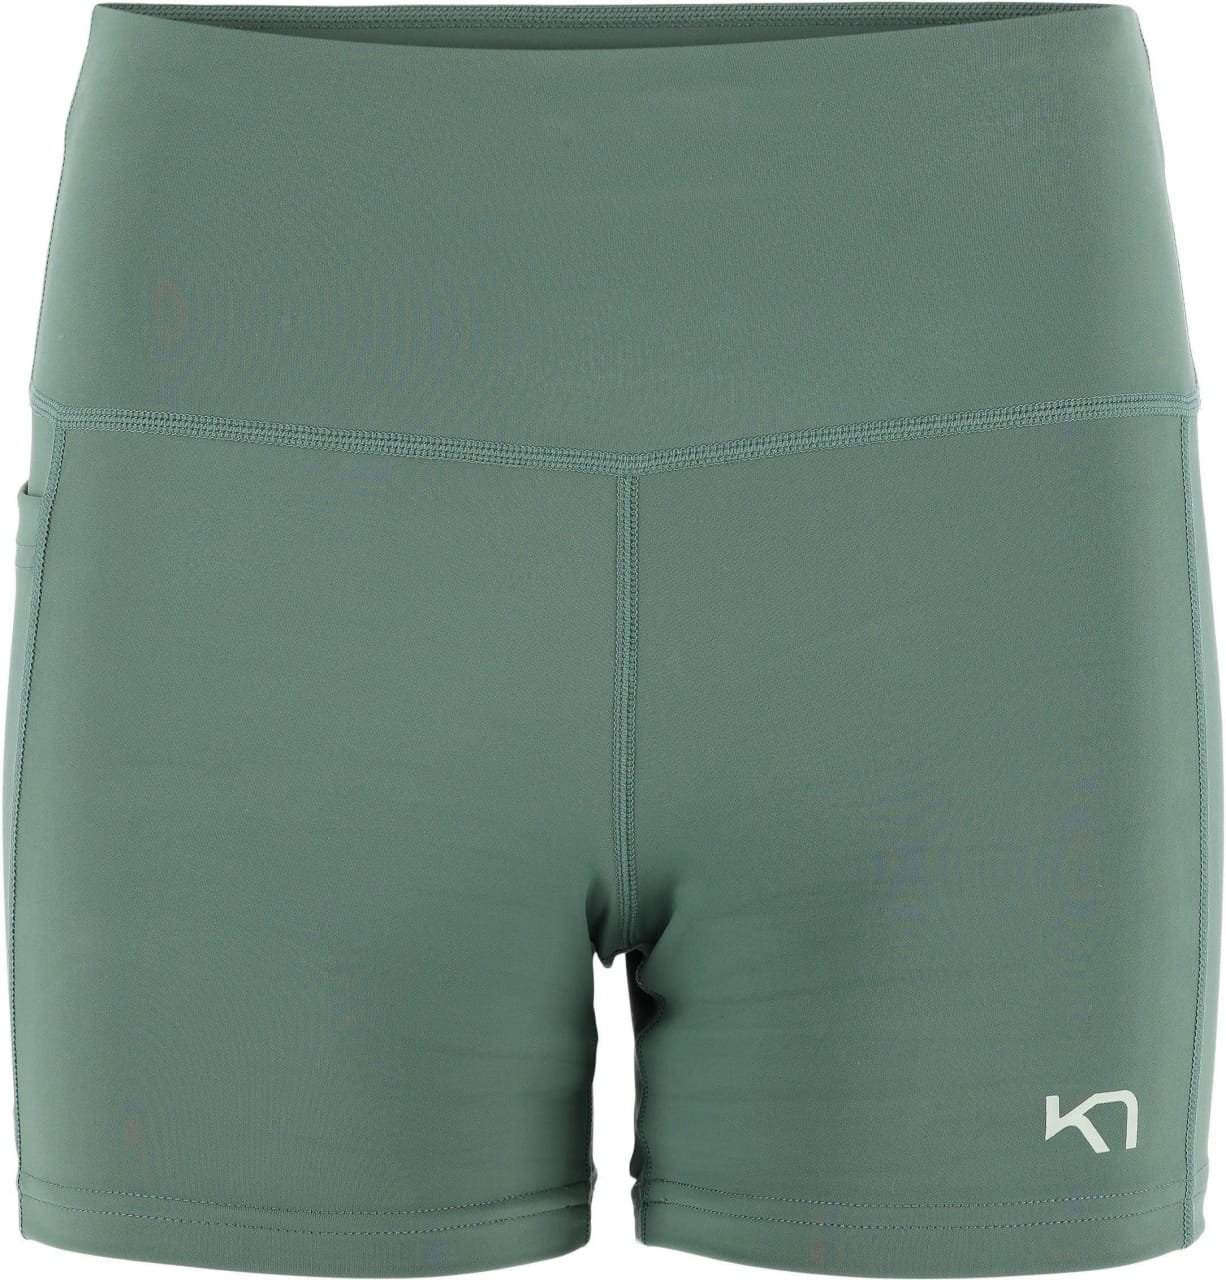 Ženske športne hlače Kari Traa Vilde Shorts 3IN